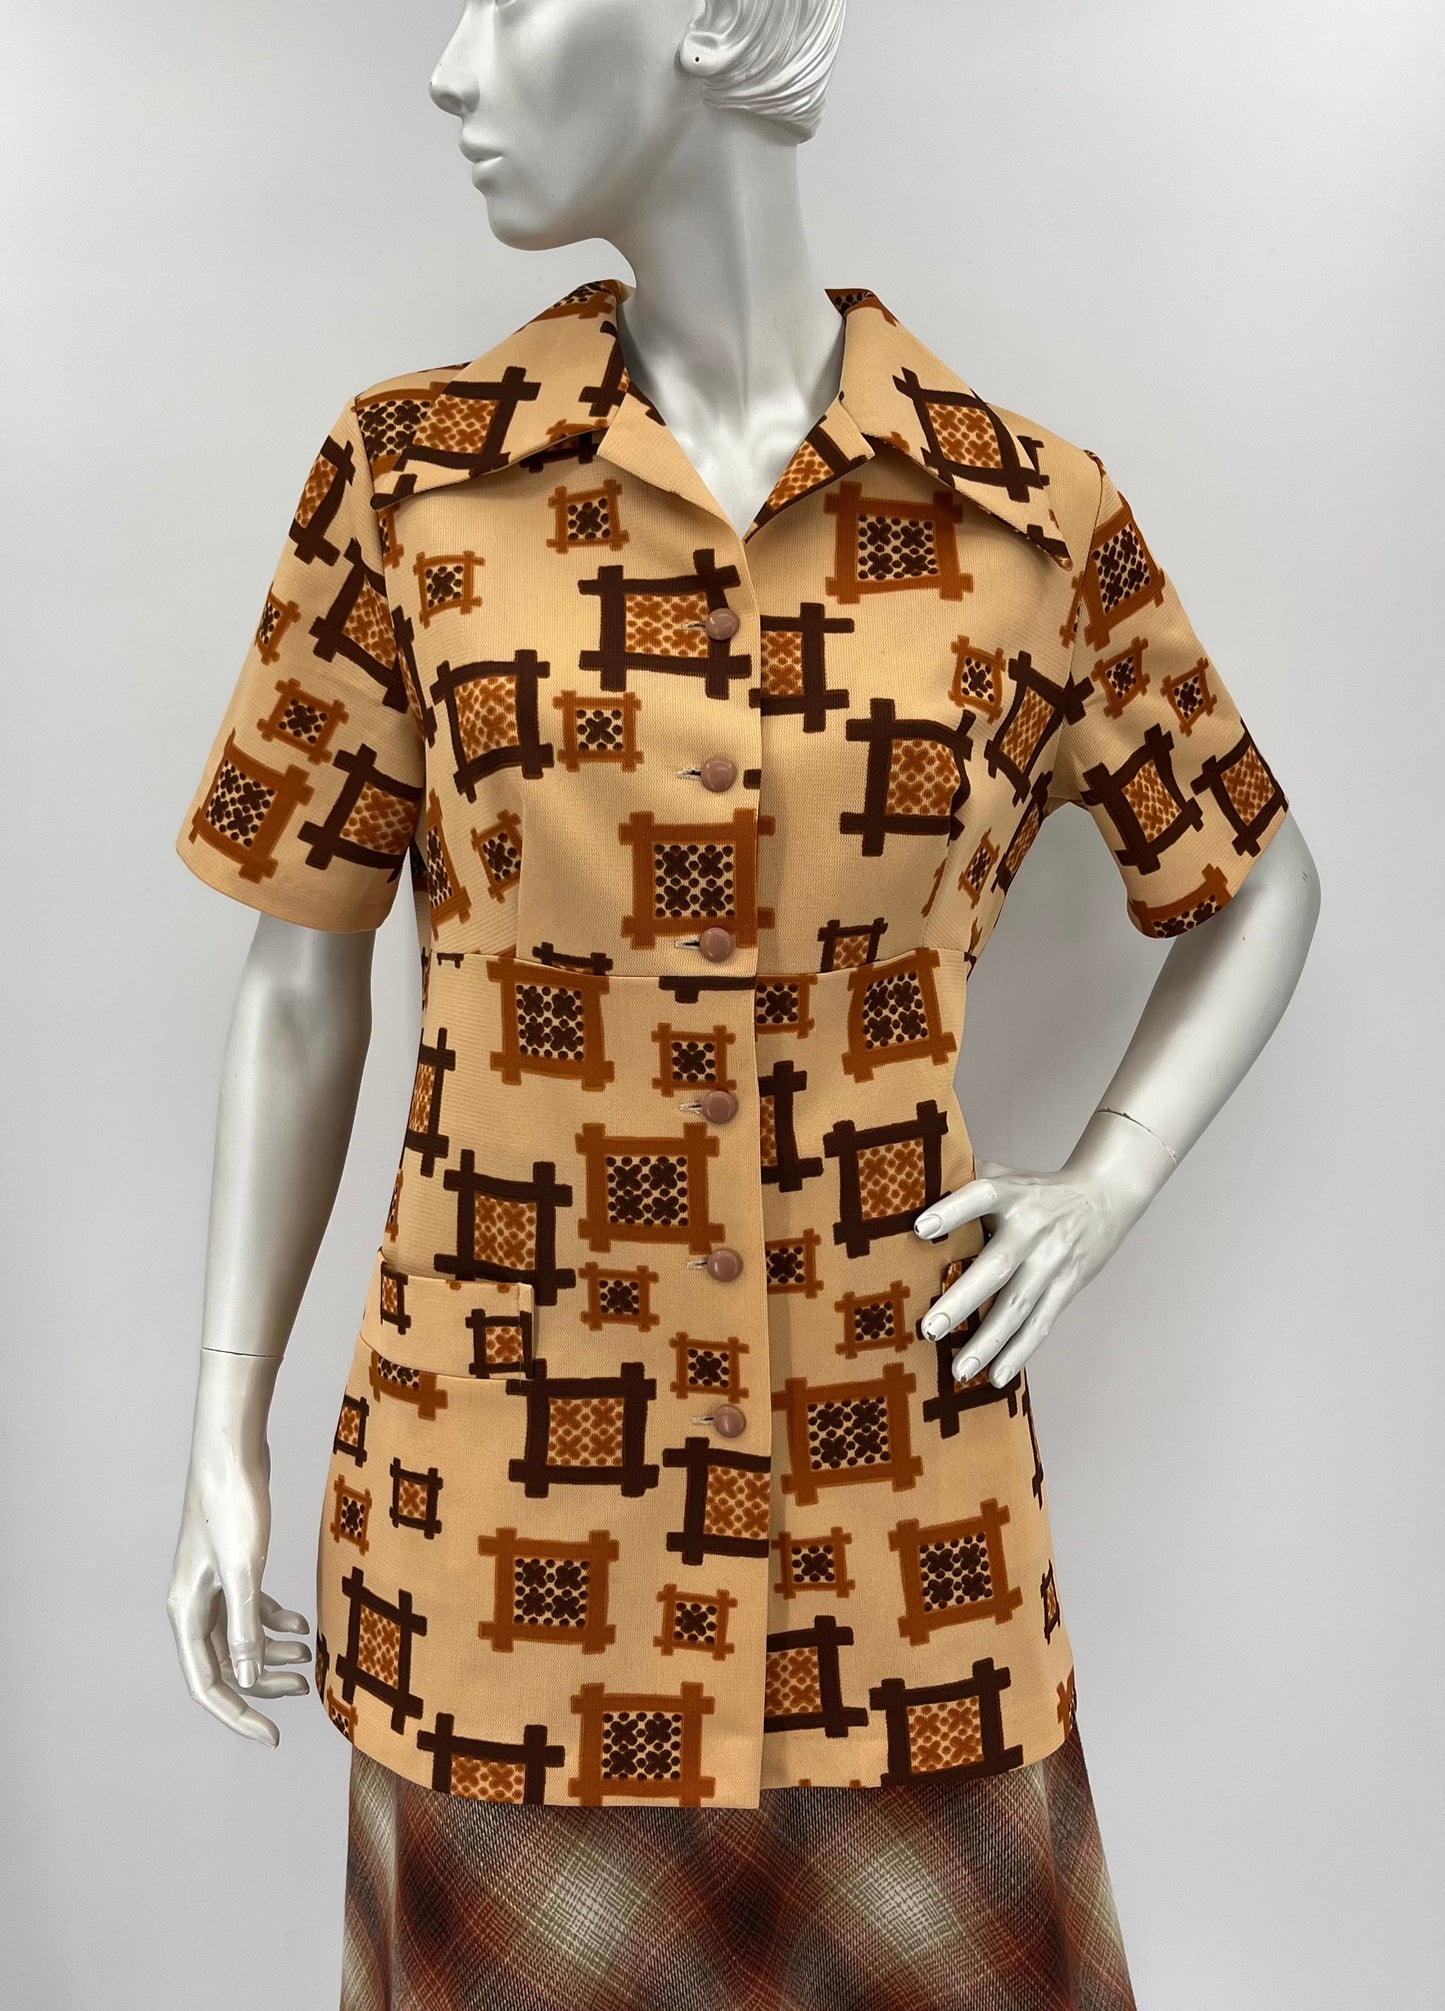 Barbarella, neliökuvioinen paita, 80-luku, koko 40